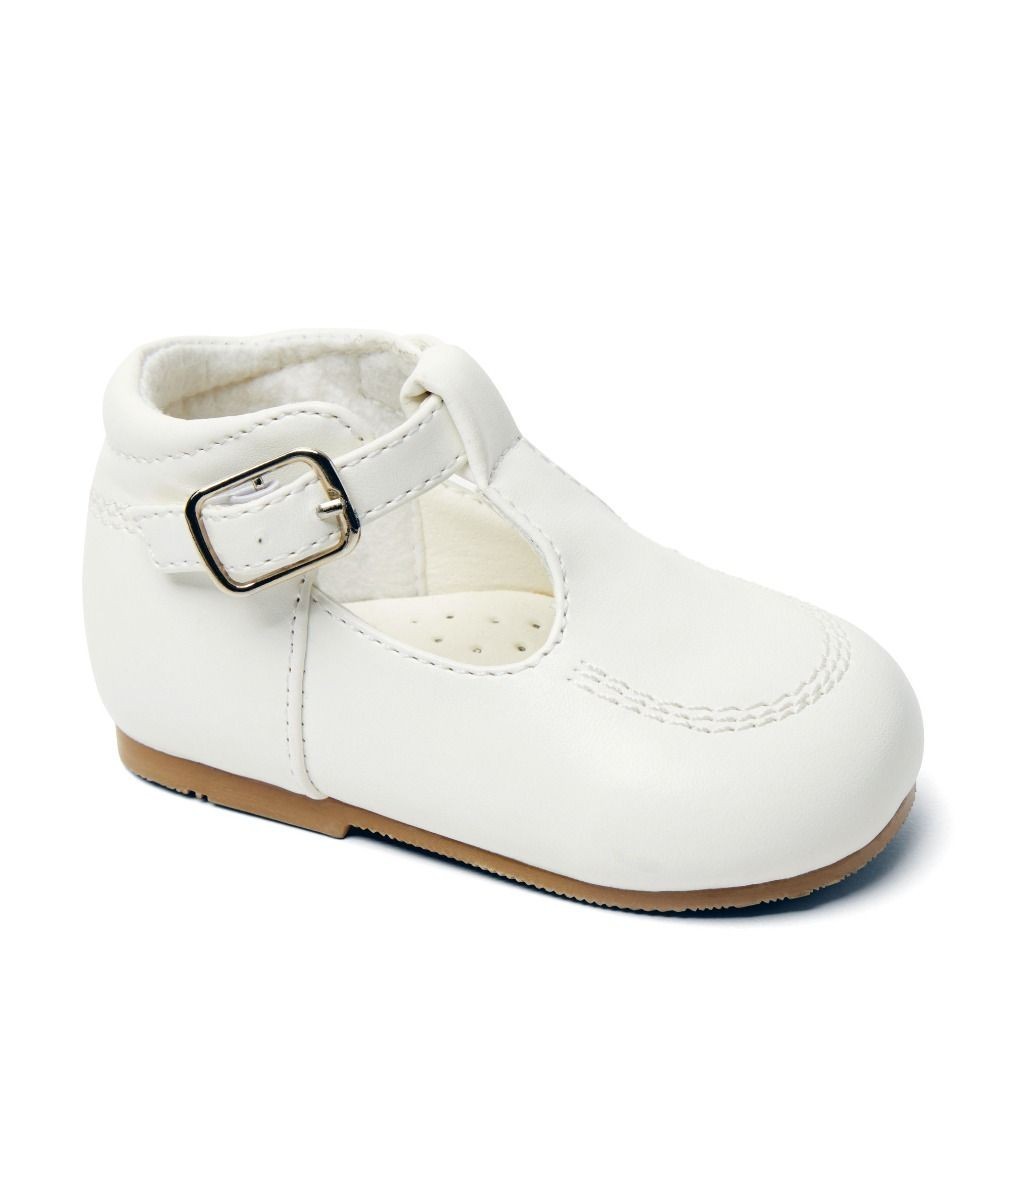 Baby- & Jungen-Schuhe mit Schnalle aus Leder – TEDDY - Weiß